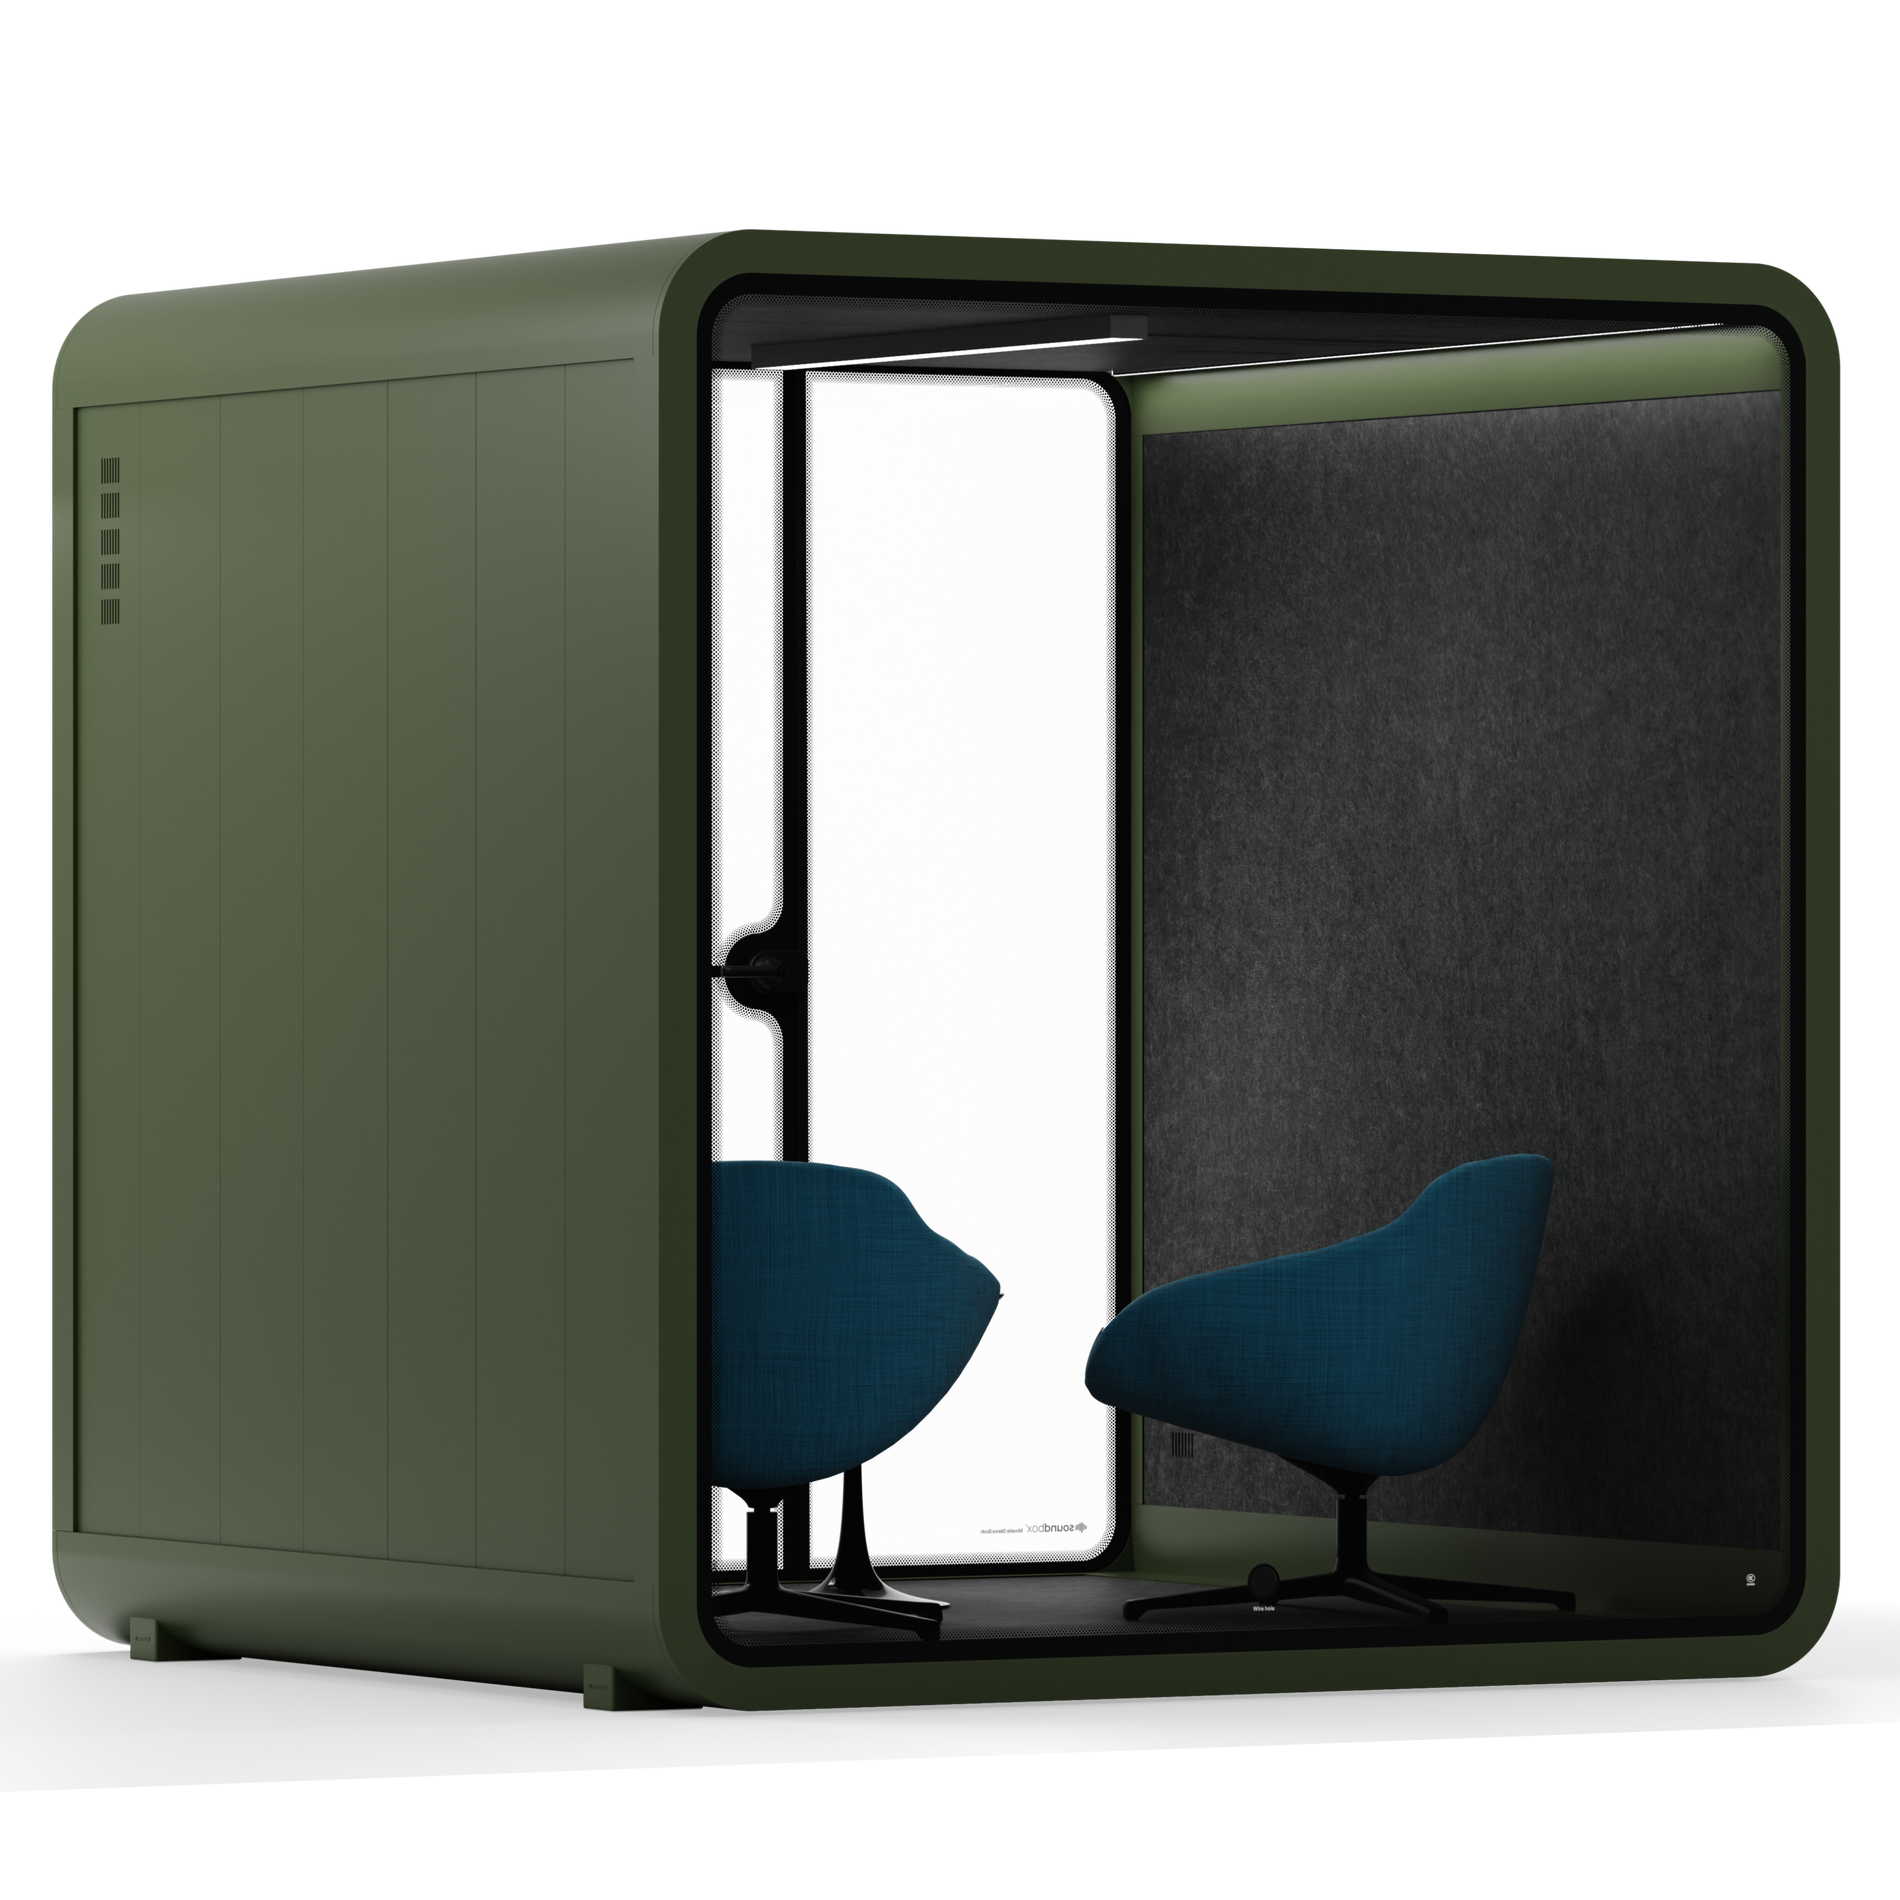 Quell - Besprechungskabine - 6 PersonenDark Green / Dark Grey / Furniture Set 2